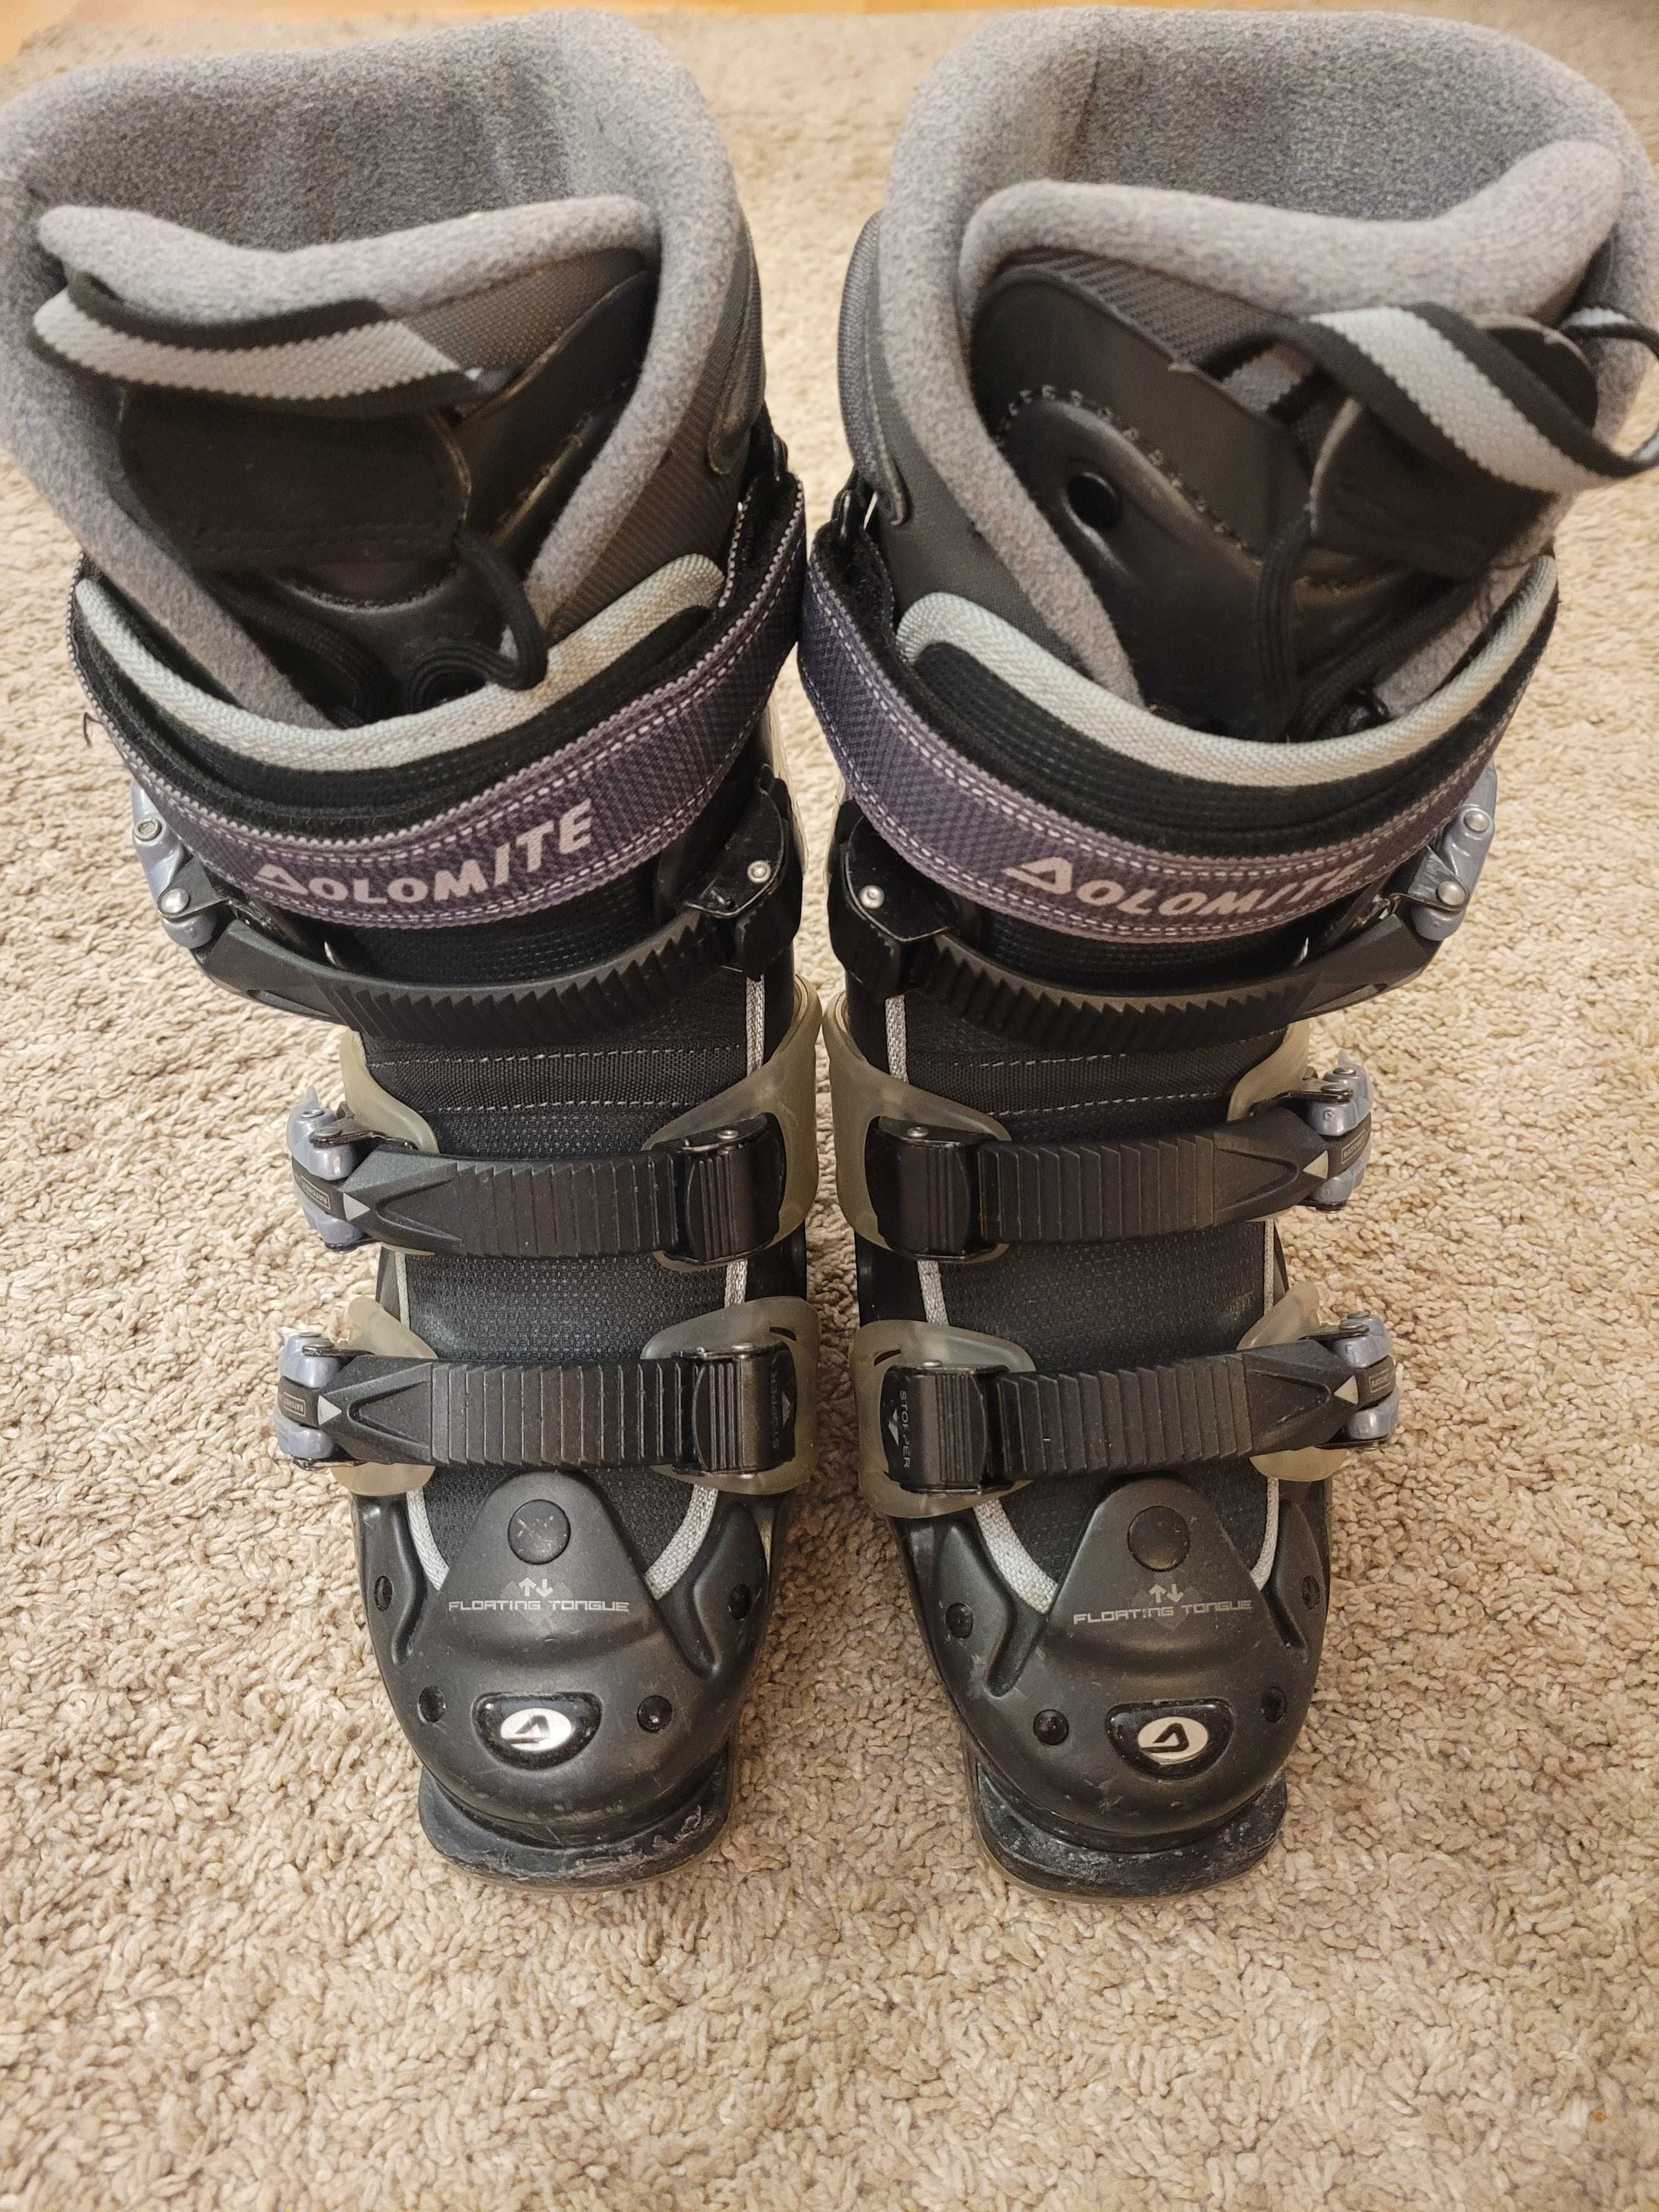 Buty narciarskie DOLOMITE OC80 HOTRONIC roz. wkładki 24,5cm